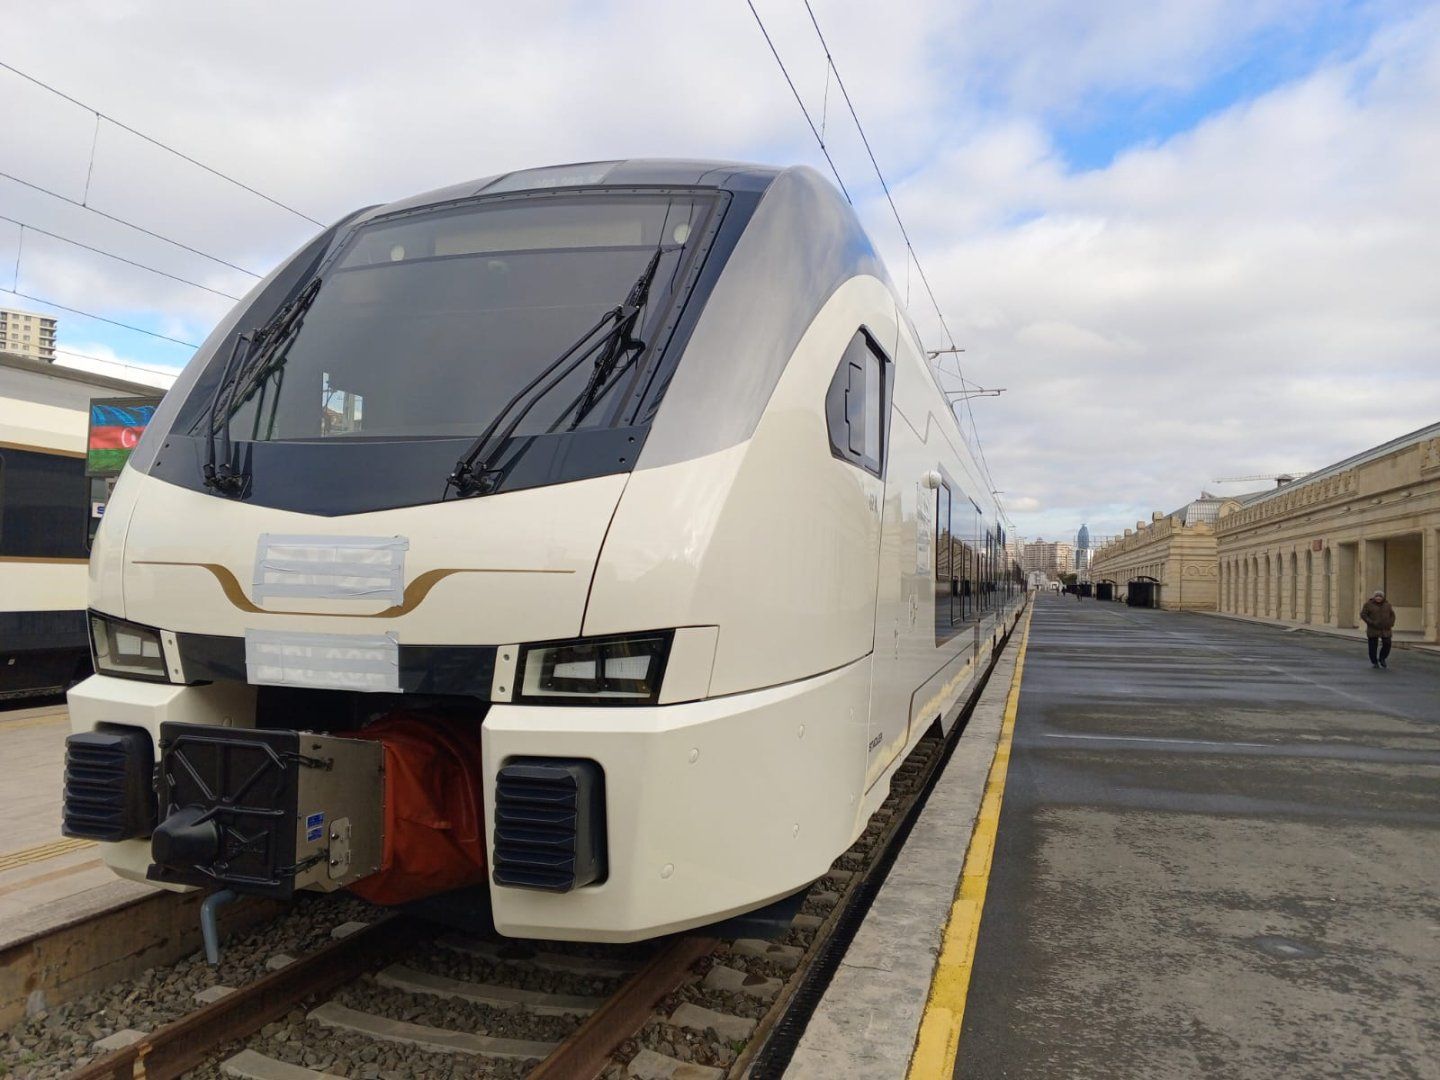 New Stadler trains delivered to Baku [PHOTOS]